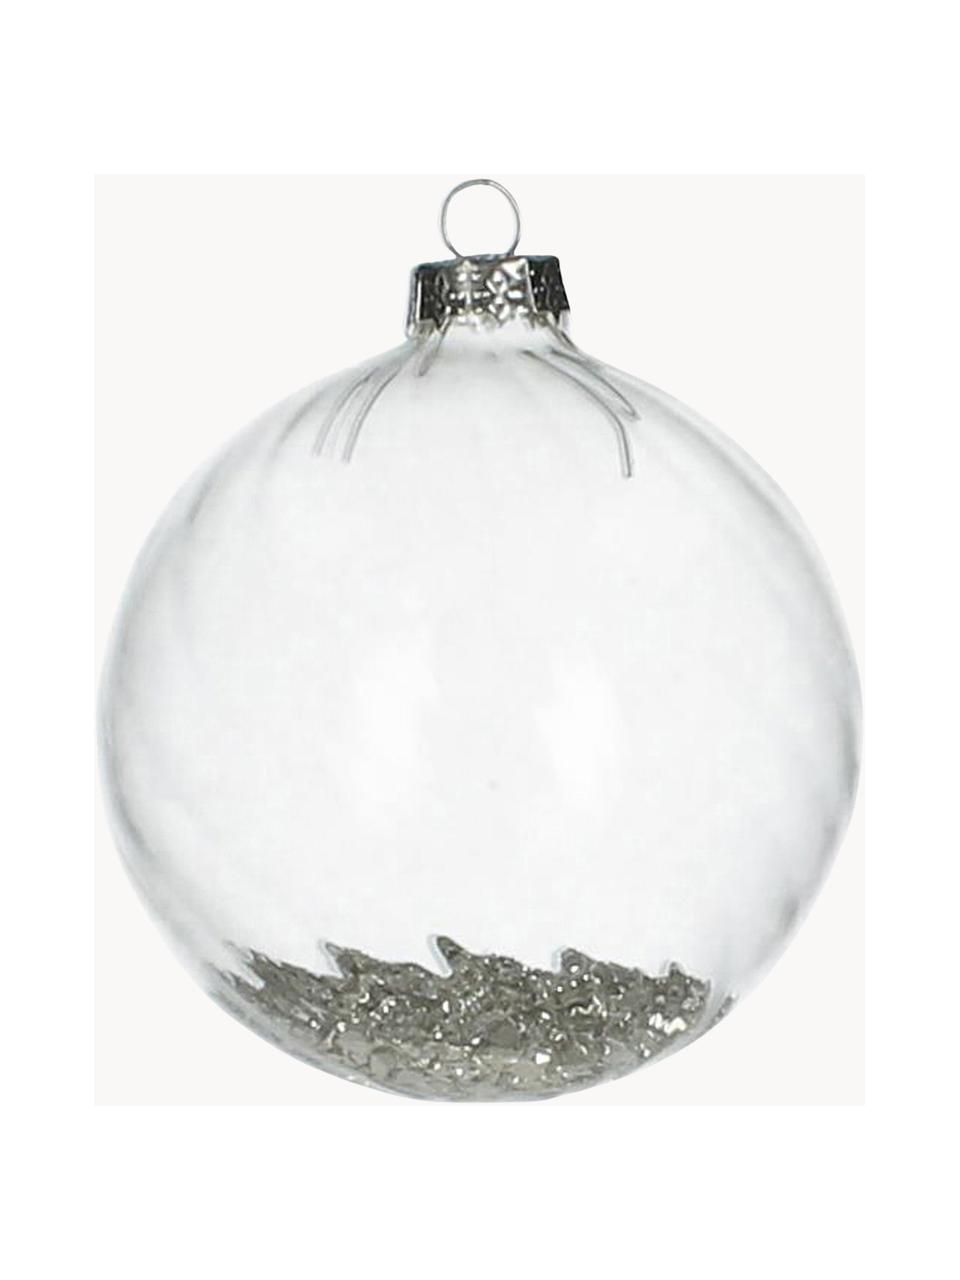 Vánoční ozdoby Rill, 2 ks, Transparentní, stříbrná, Ø 8 cm